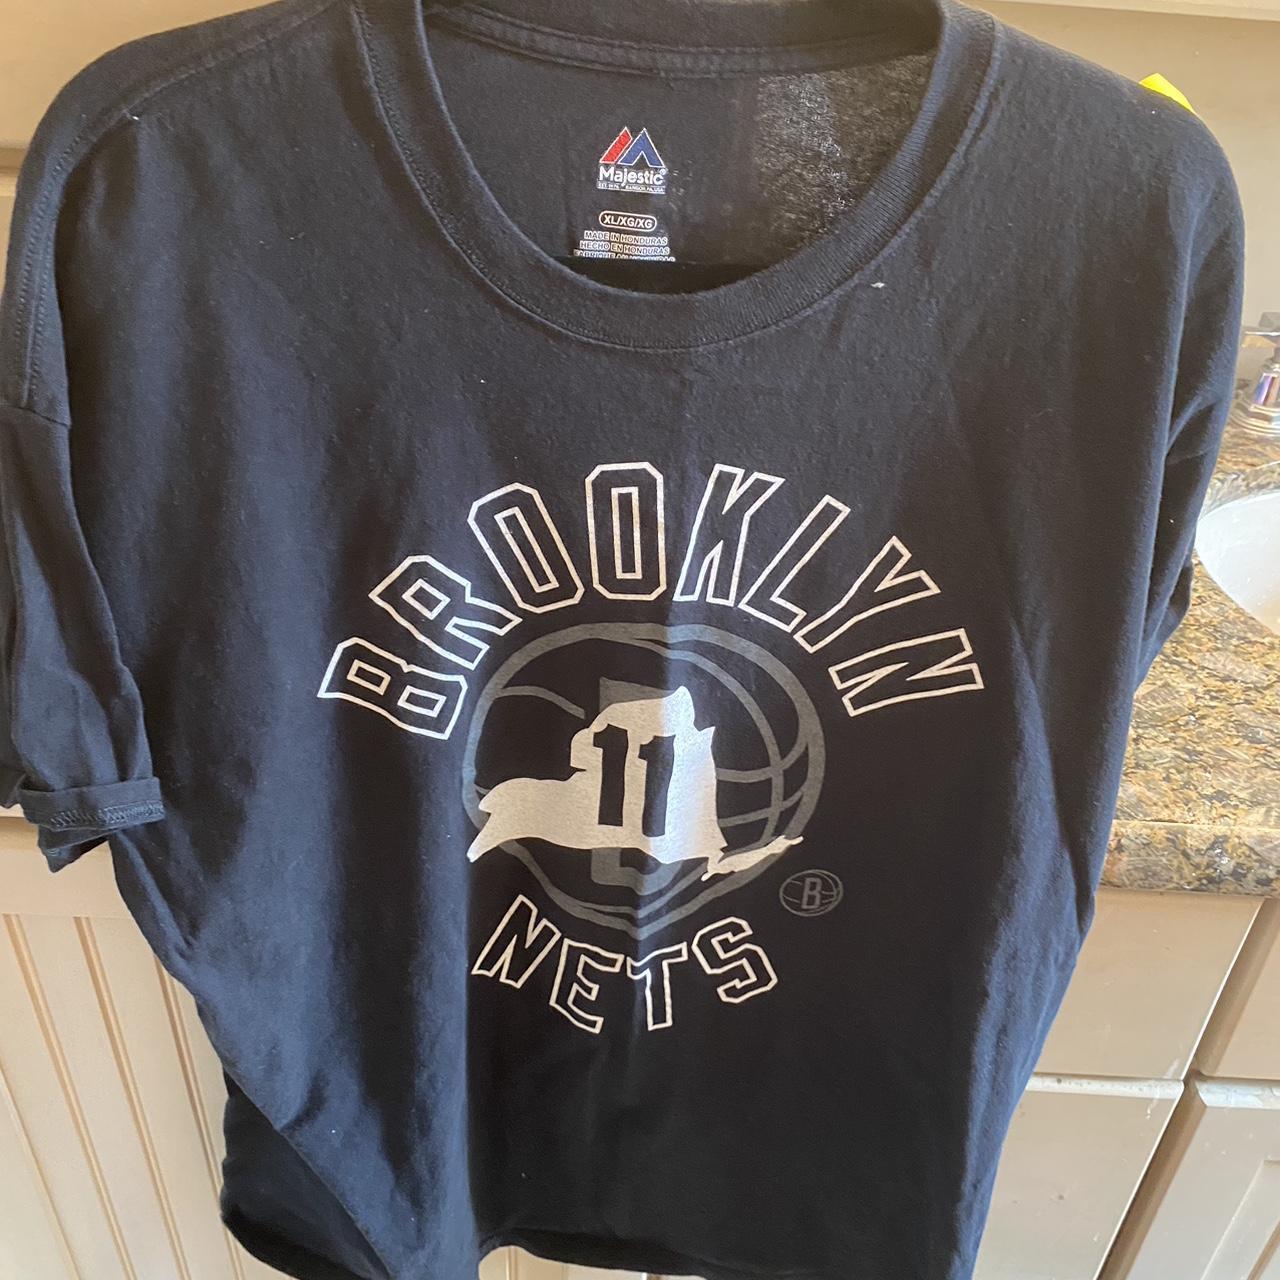 Majestic Brooklyn Nets NBA Jerseys for sale